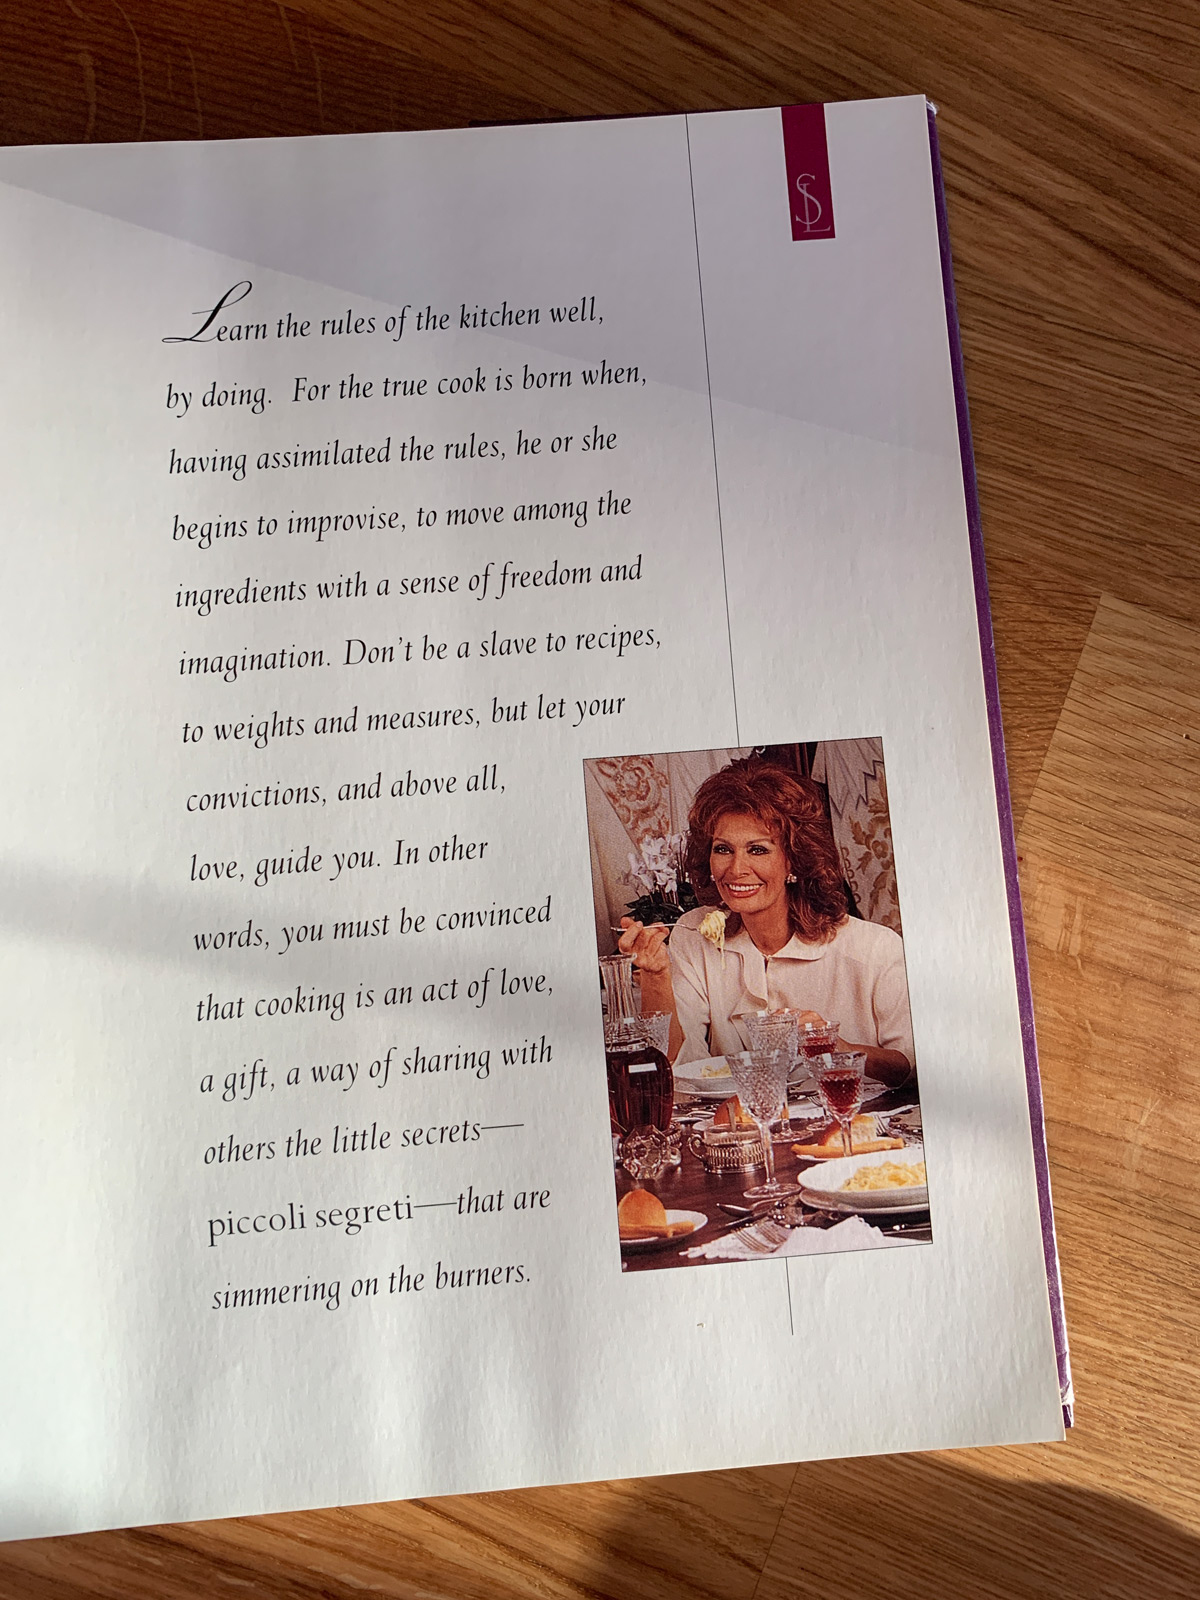 Готовь, как будто занимаешься любовью, книга Софи Лорен. Одесский блог Марии Каленской о кулинарии.